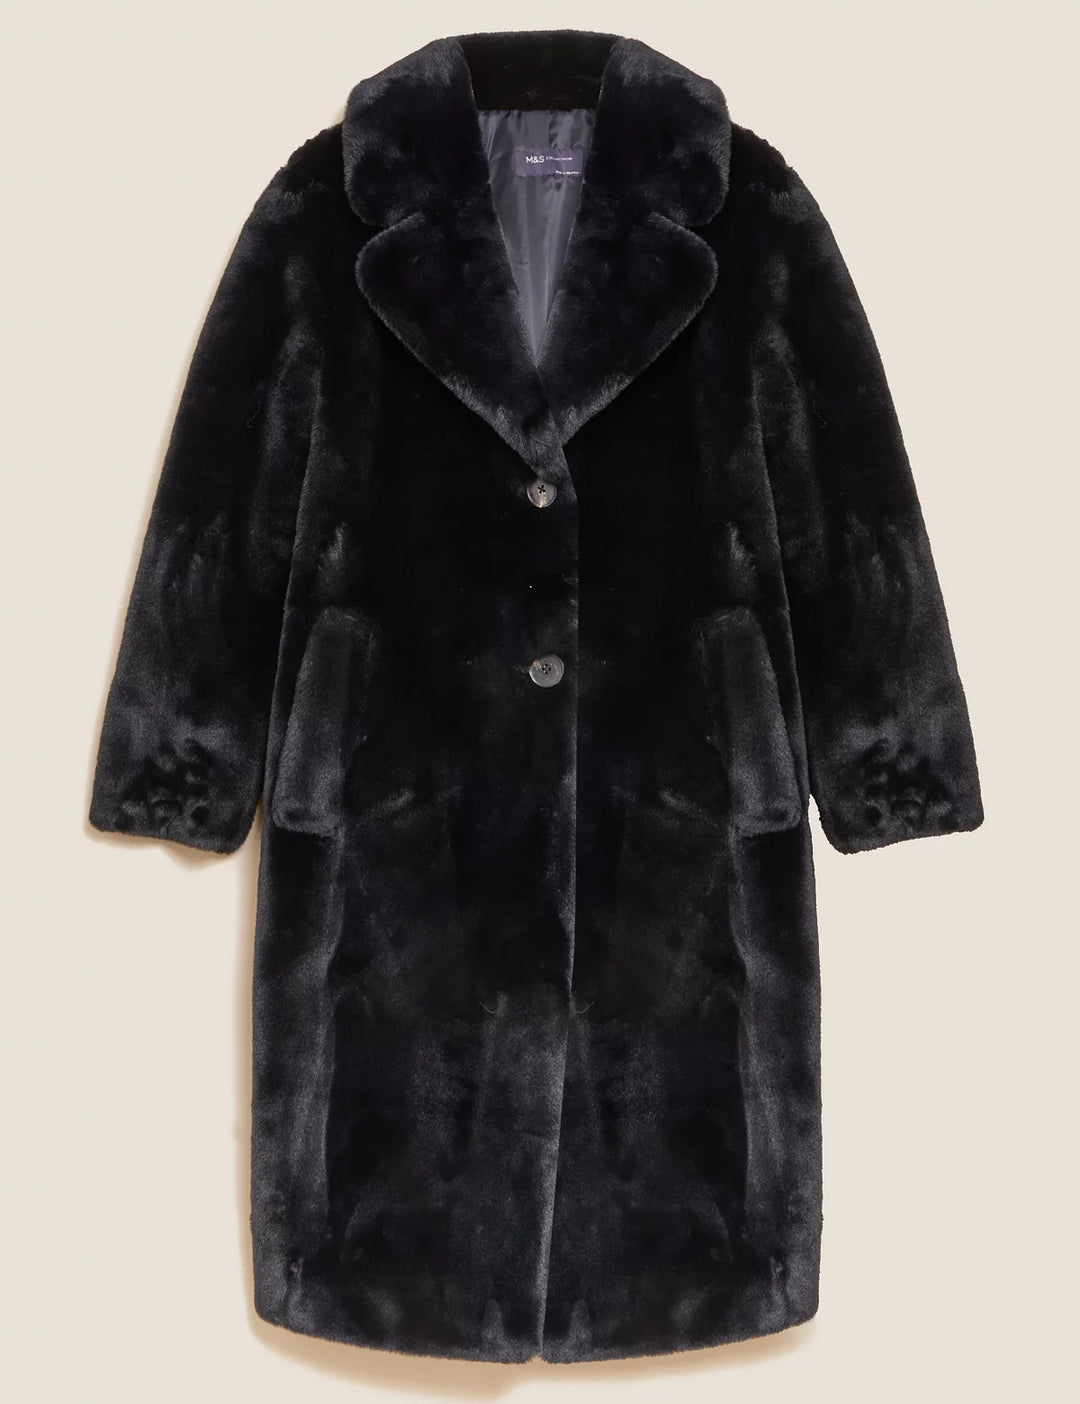 M&S Ladies Long Coat With Fur T59/1144C